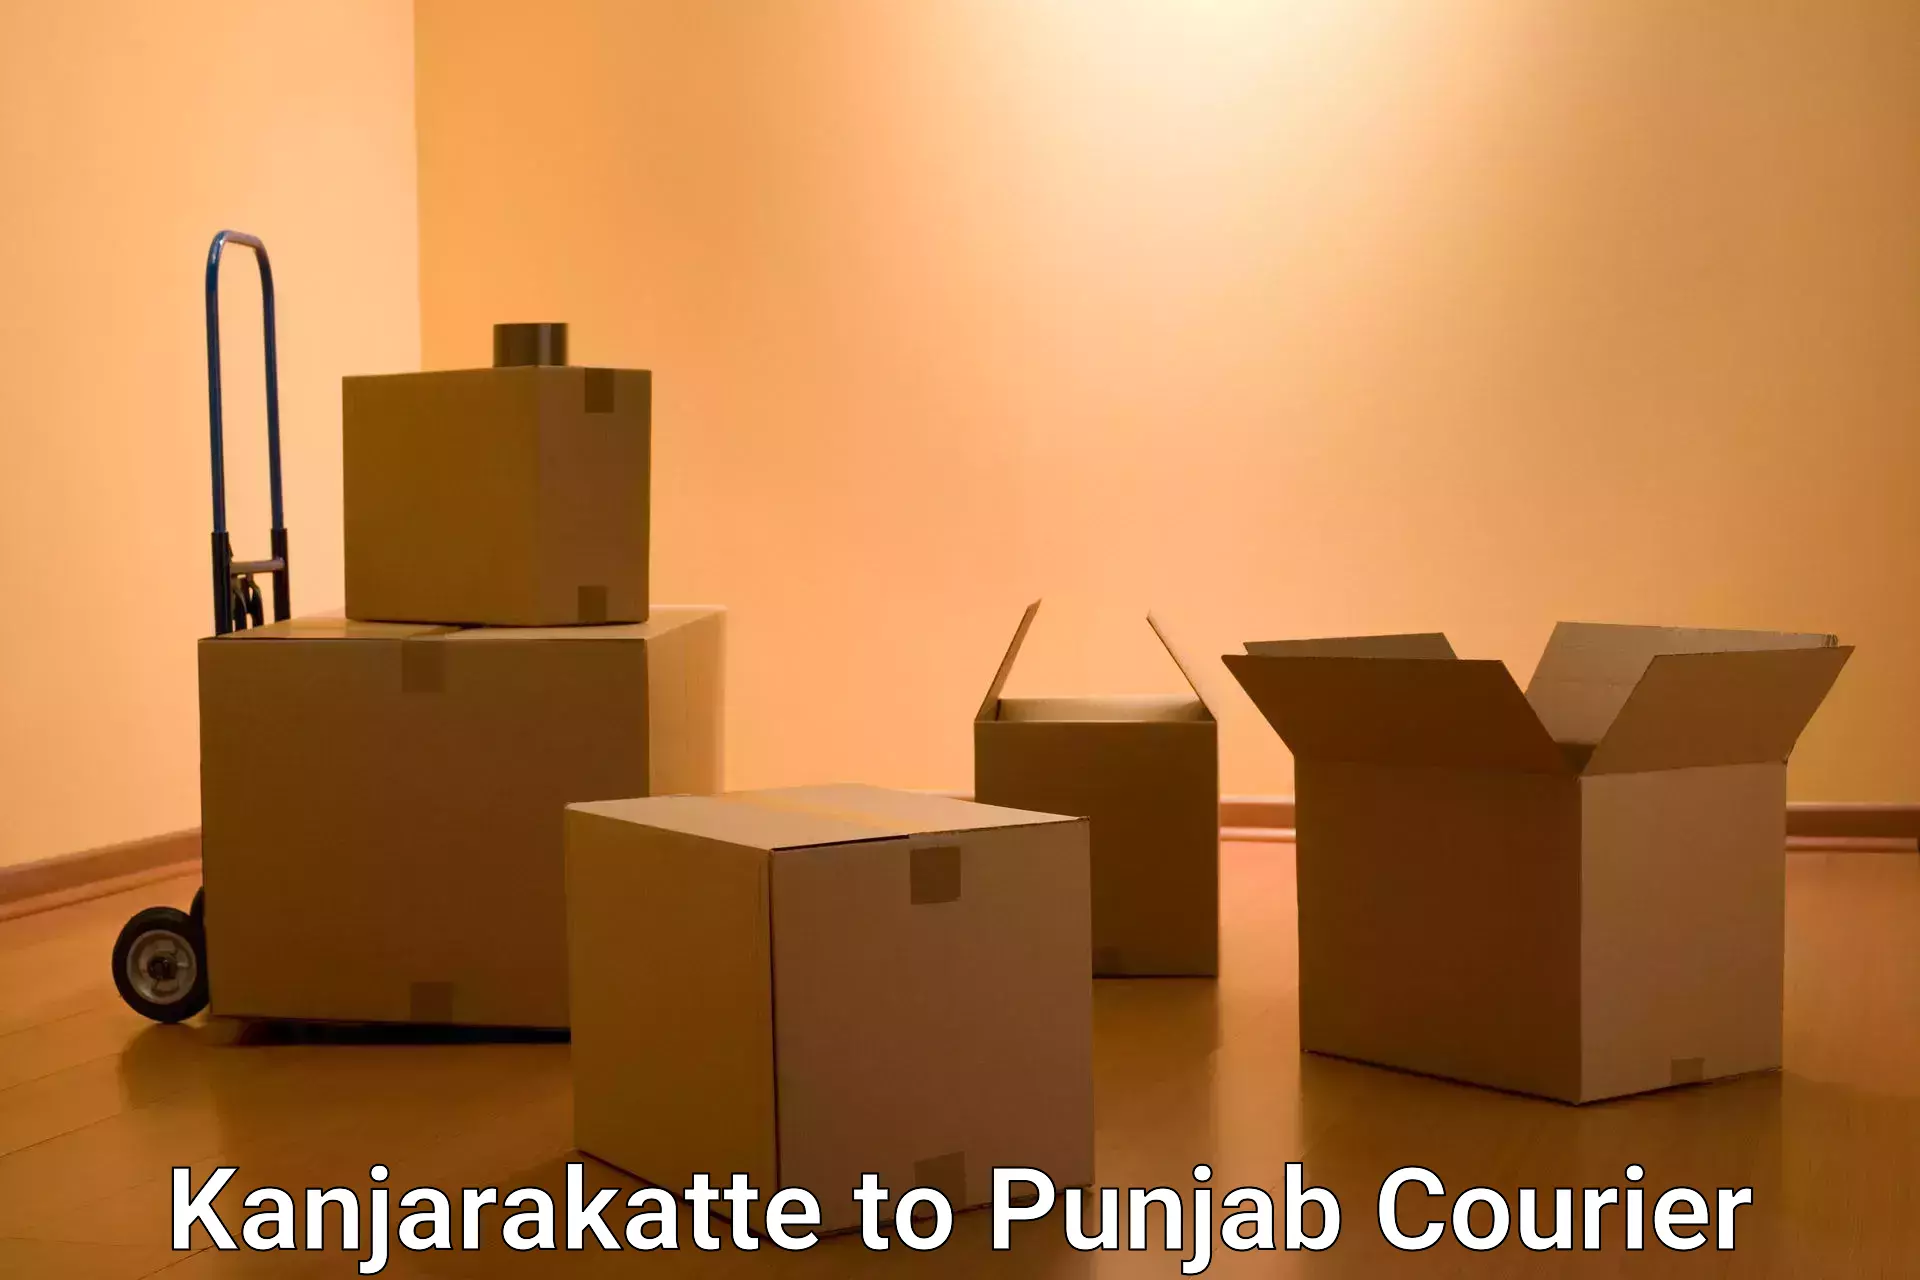 Dynamic courier operations Kanjarakatte to Punjab